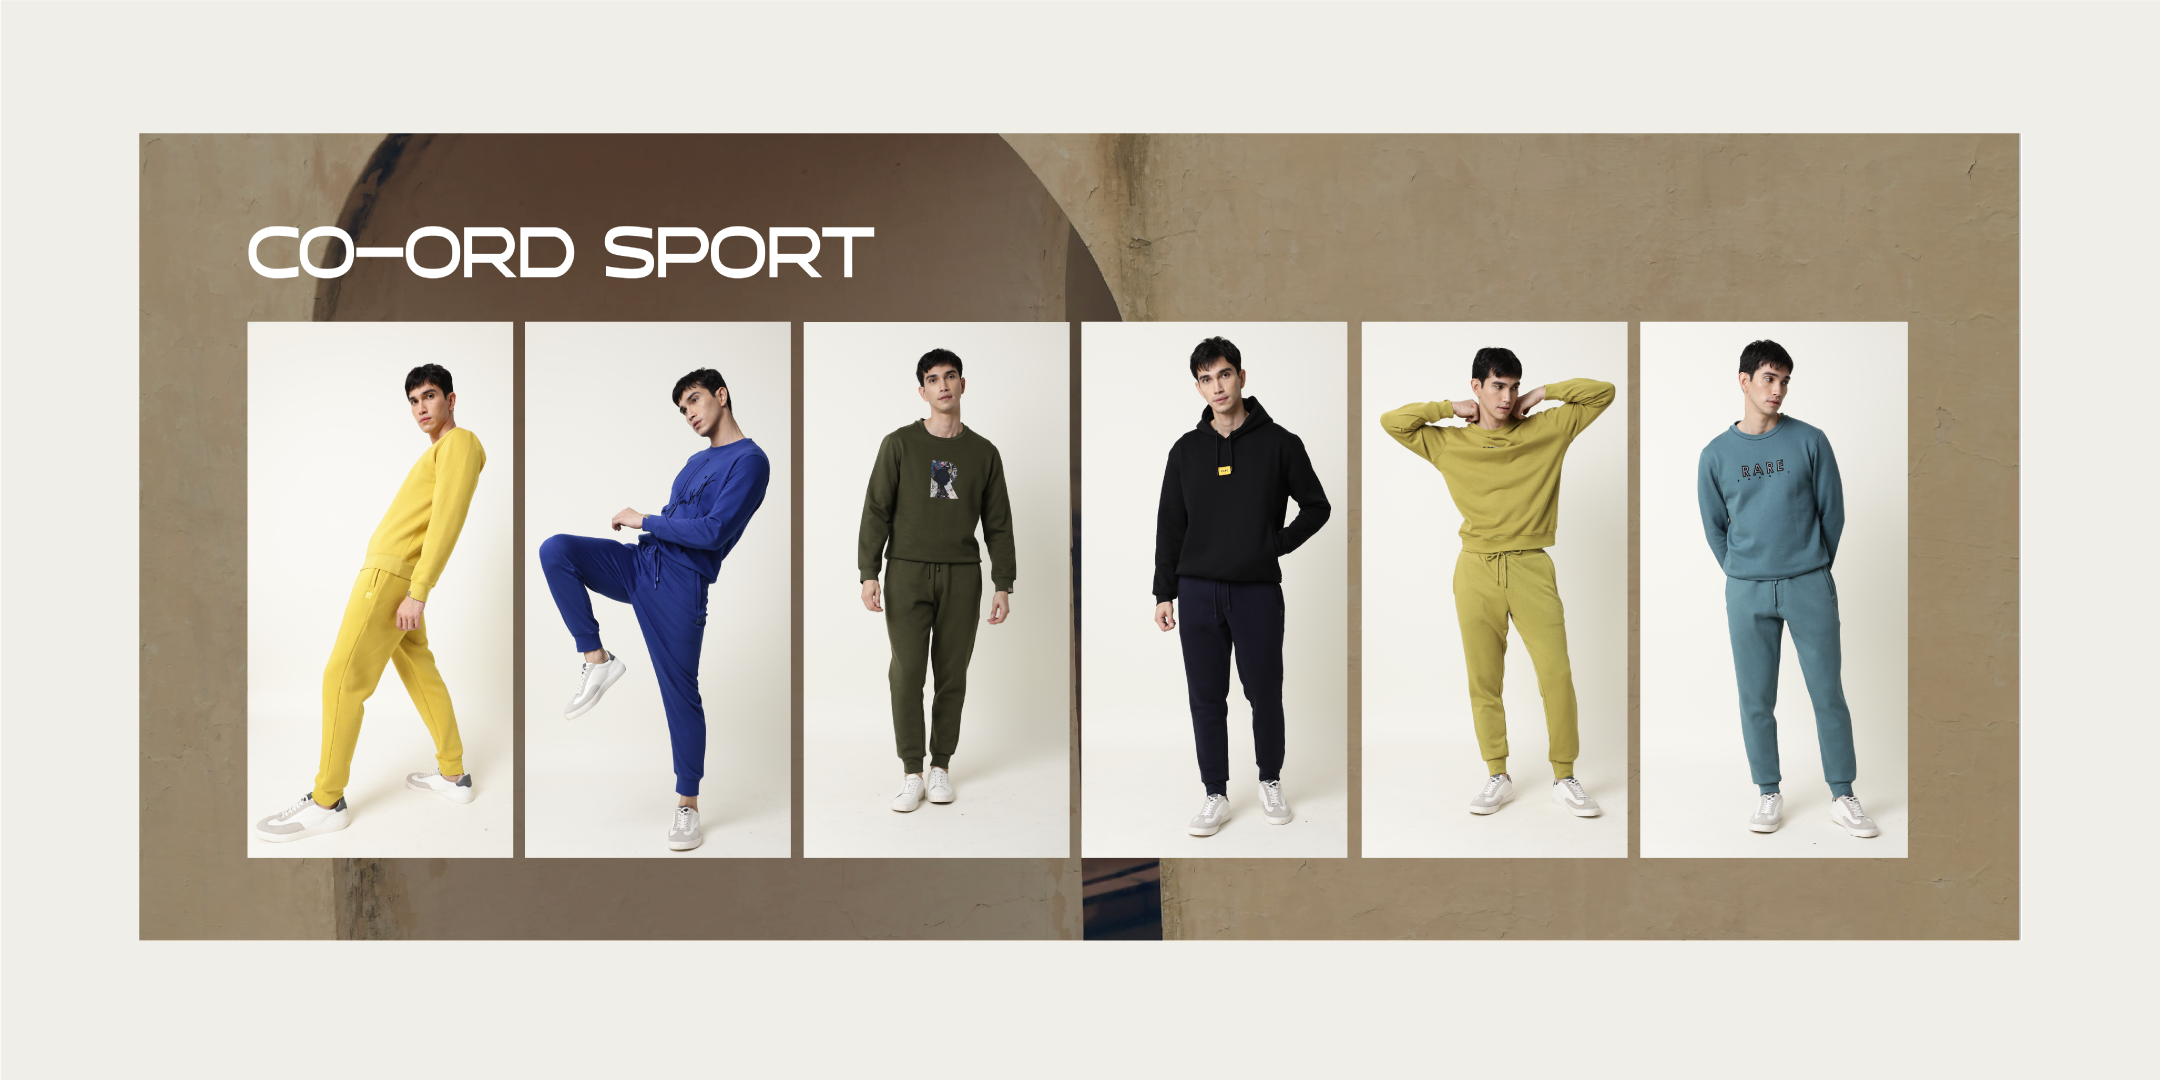 Tracksuit Men 2 Pieces Sets sports T shirt+shorts Print Brand Sets